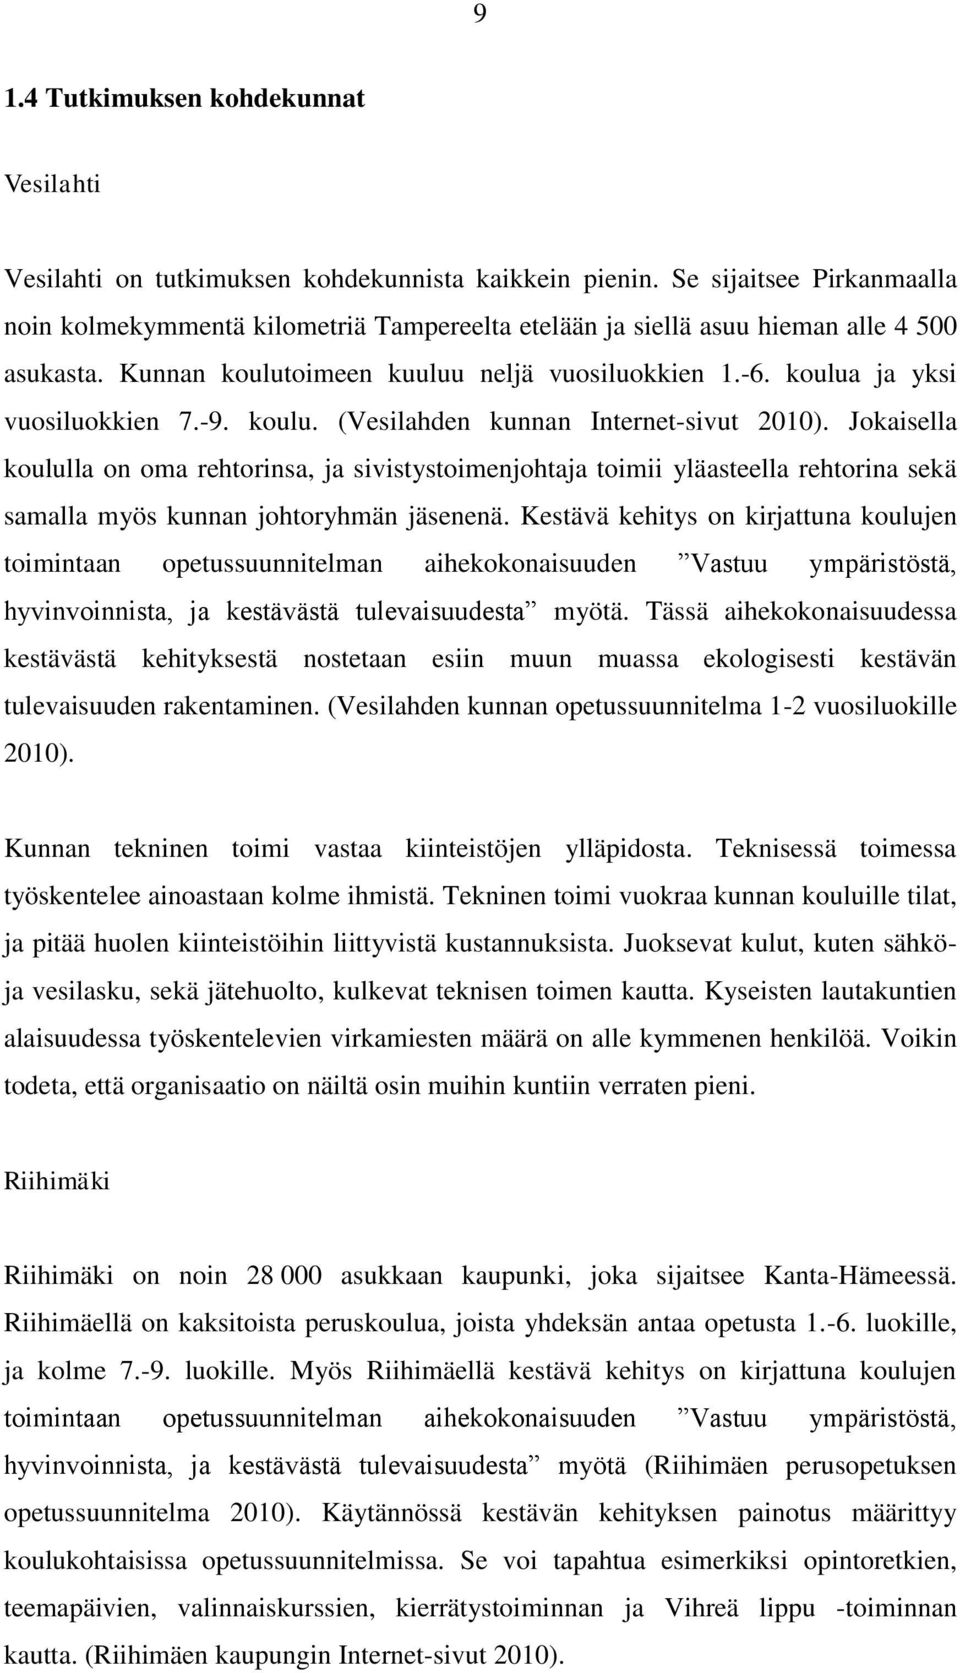 koulua ja yksi vuosiluokkien 7.-9. koulu. (Vesilahden kunnan Internet-sivut 2010).